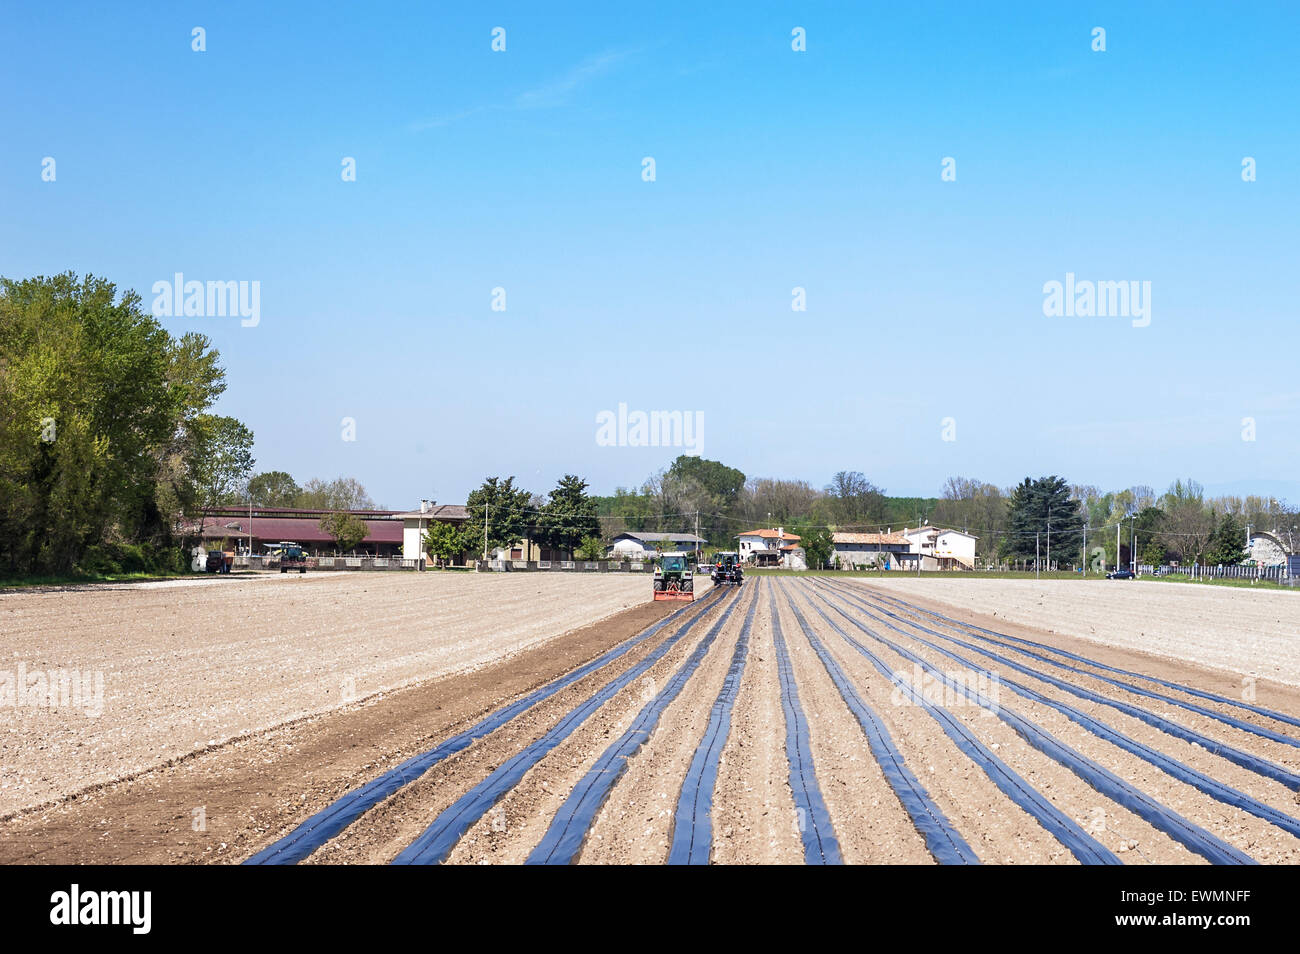 Les travaux agricoles : préparer les champs pour la plantation des greffés des vis Banque D'Images